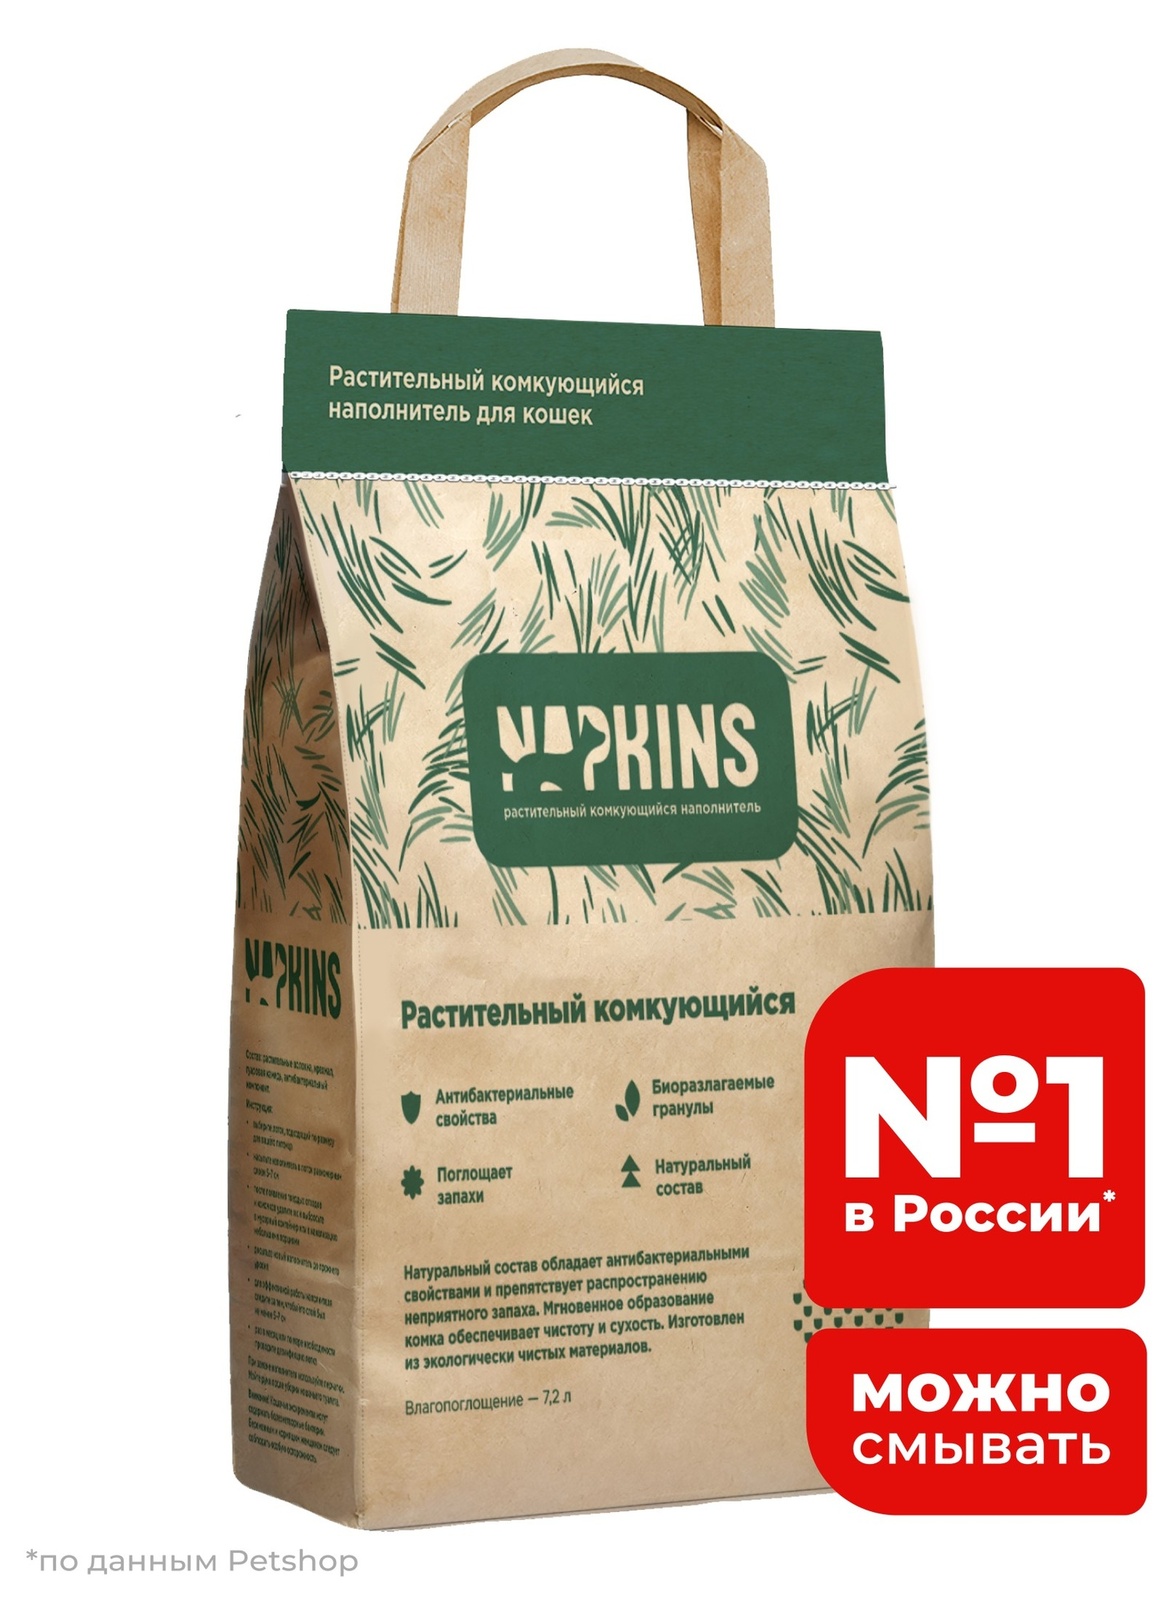 NAPKINS наполнитель NAPKINS наполнитель растительный комкующийся наполнитель (3 кг) napkins наполнитель napkins наполнитель древесный наполнитель 3 кг